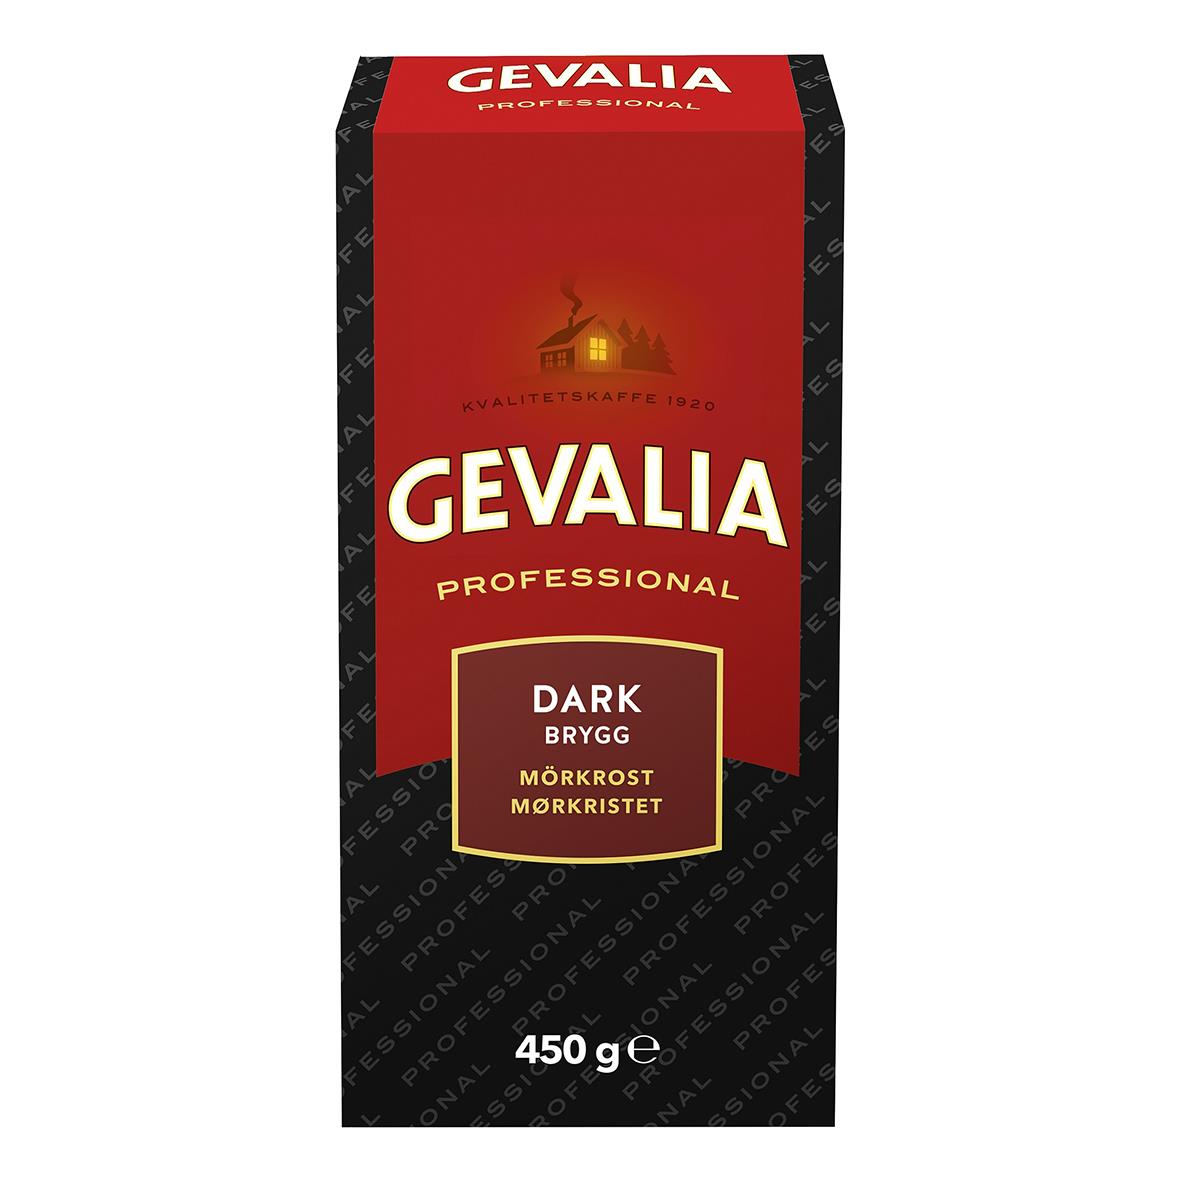 Kaffe Gevalia Original Mörkrost Brygg 450g 60106328_1